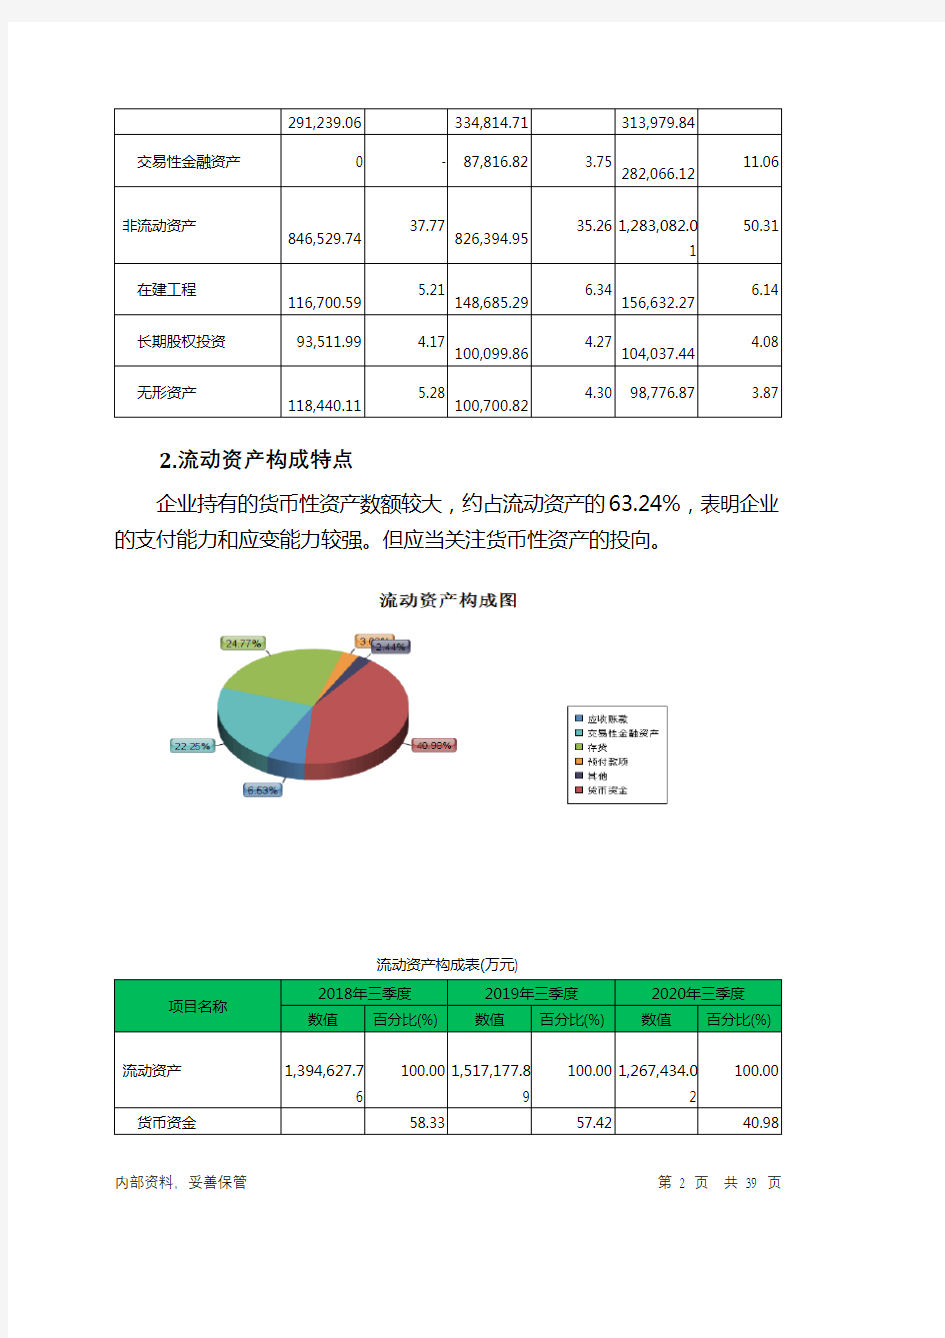 凤凰传媒2020年三季度财务分析详细报告